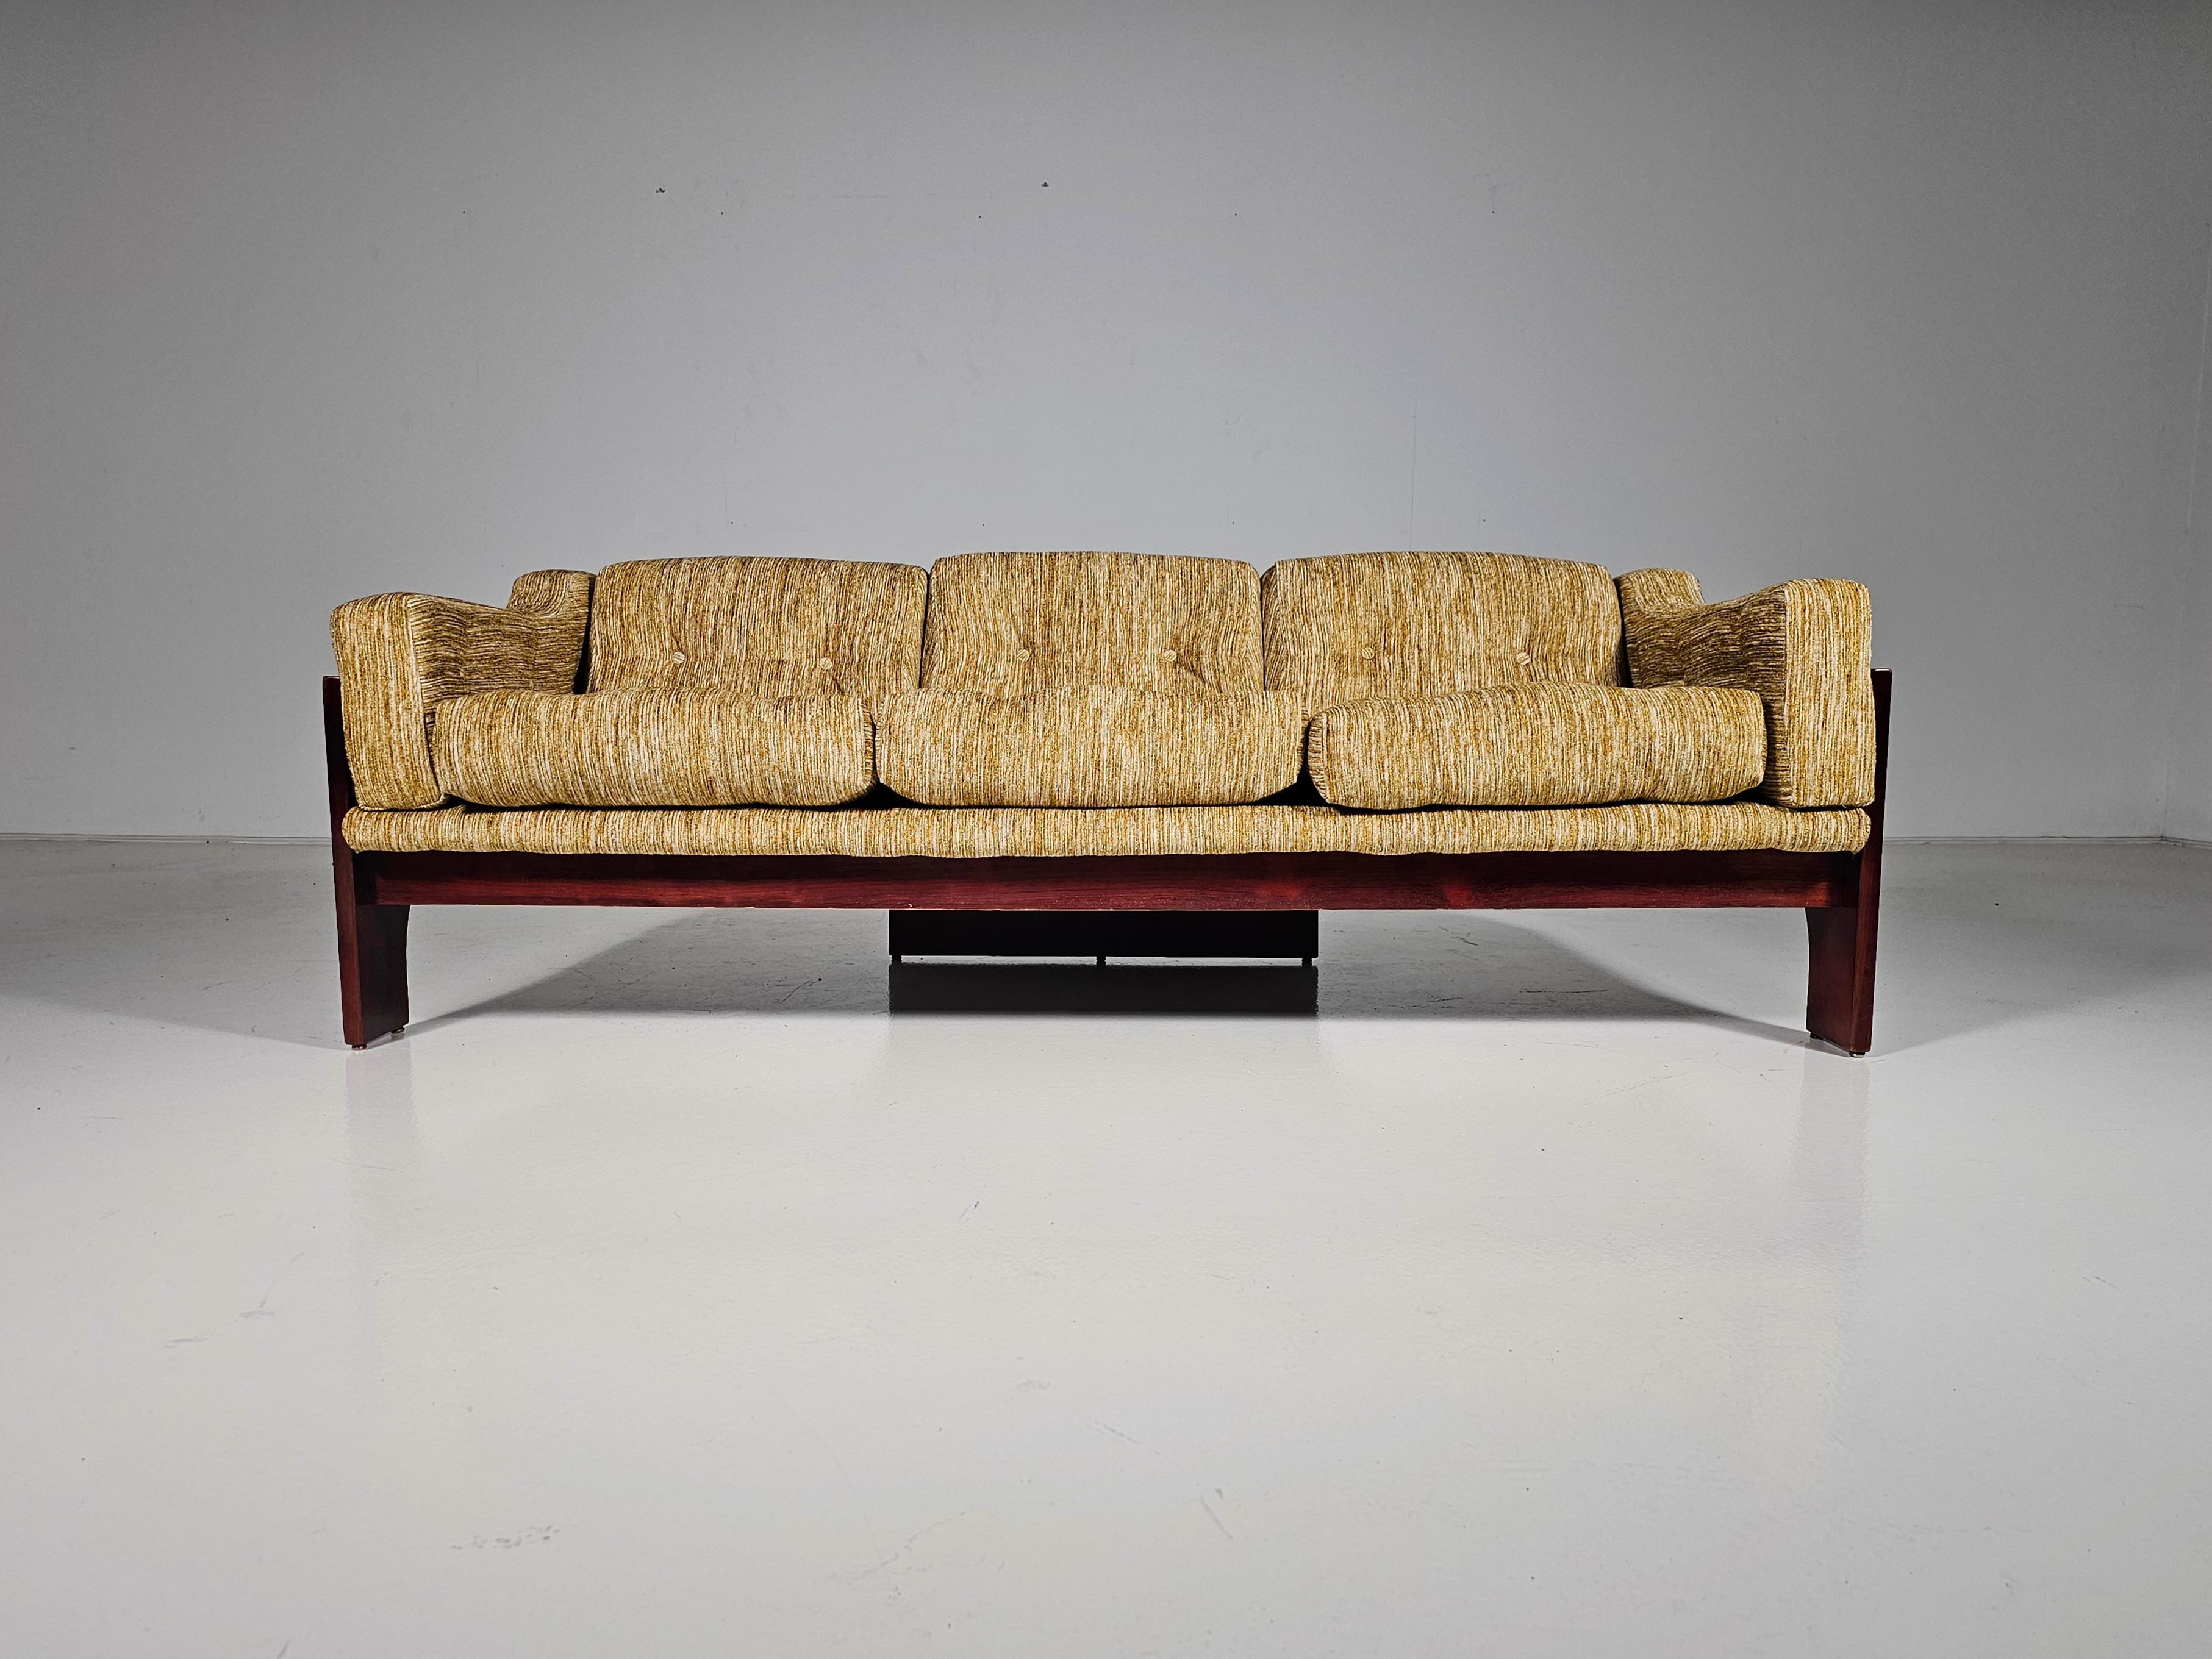 Das dreisitzige Sofa Oriolo wurde von Claudio Salocchi entworfen und ist eine Ikone des italienischen Designs. Dieses in den 1960er Jahren von Sormani entworfene Sofa besticht durch seine kühne Linienführung und seinen außergewöhnlichen Komfort, der